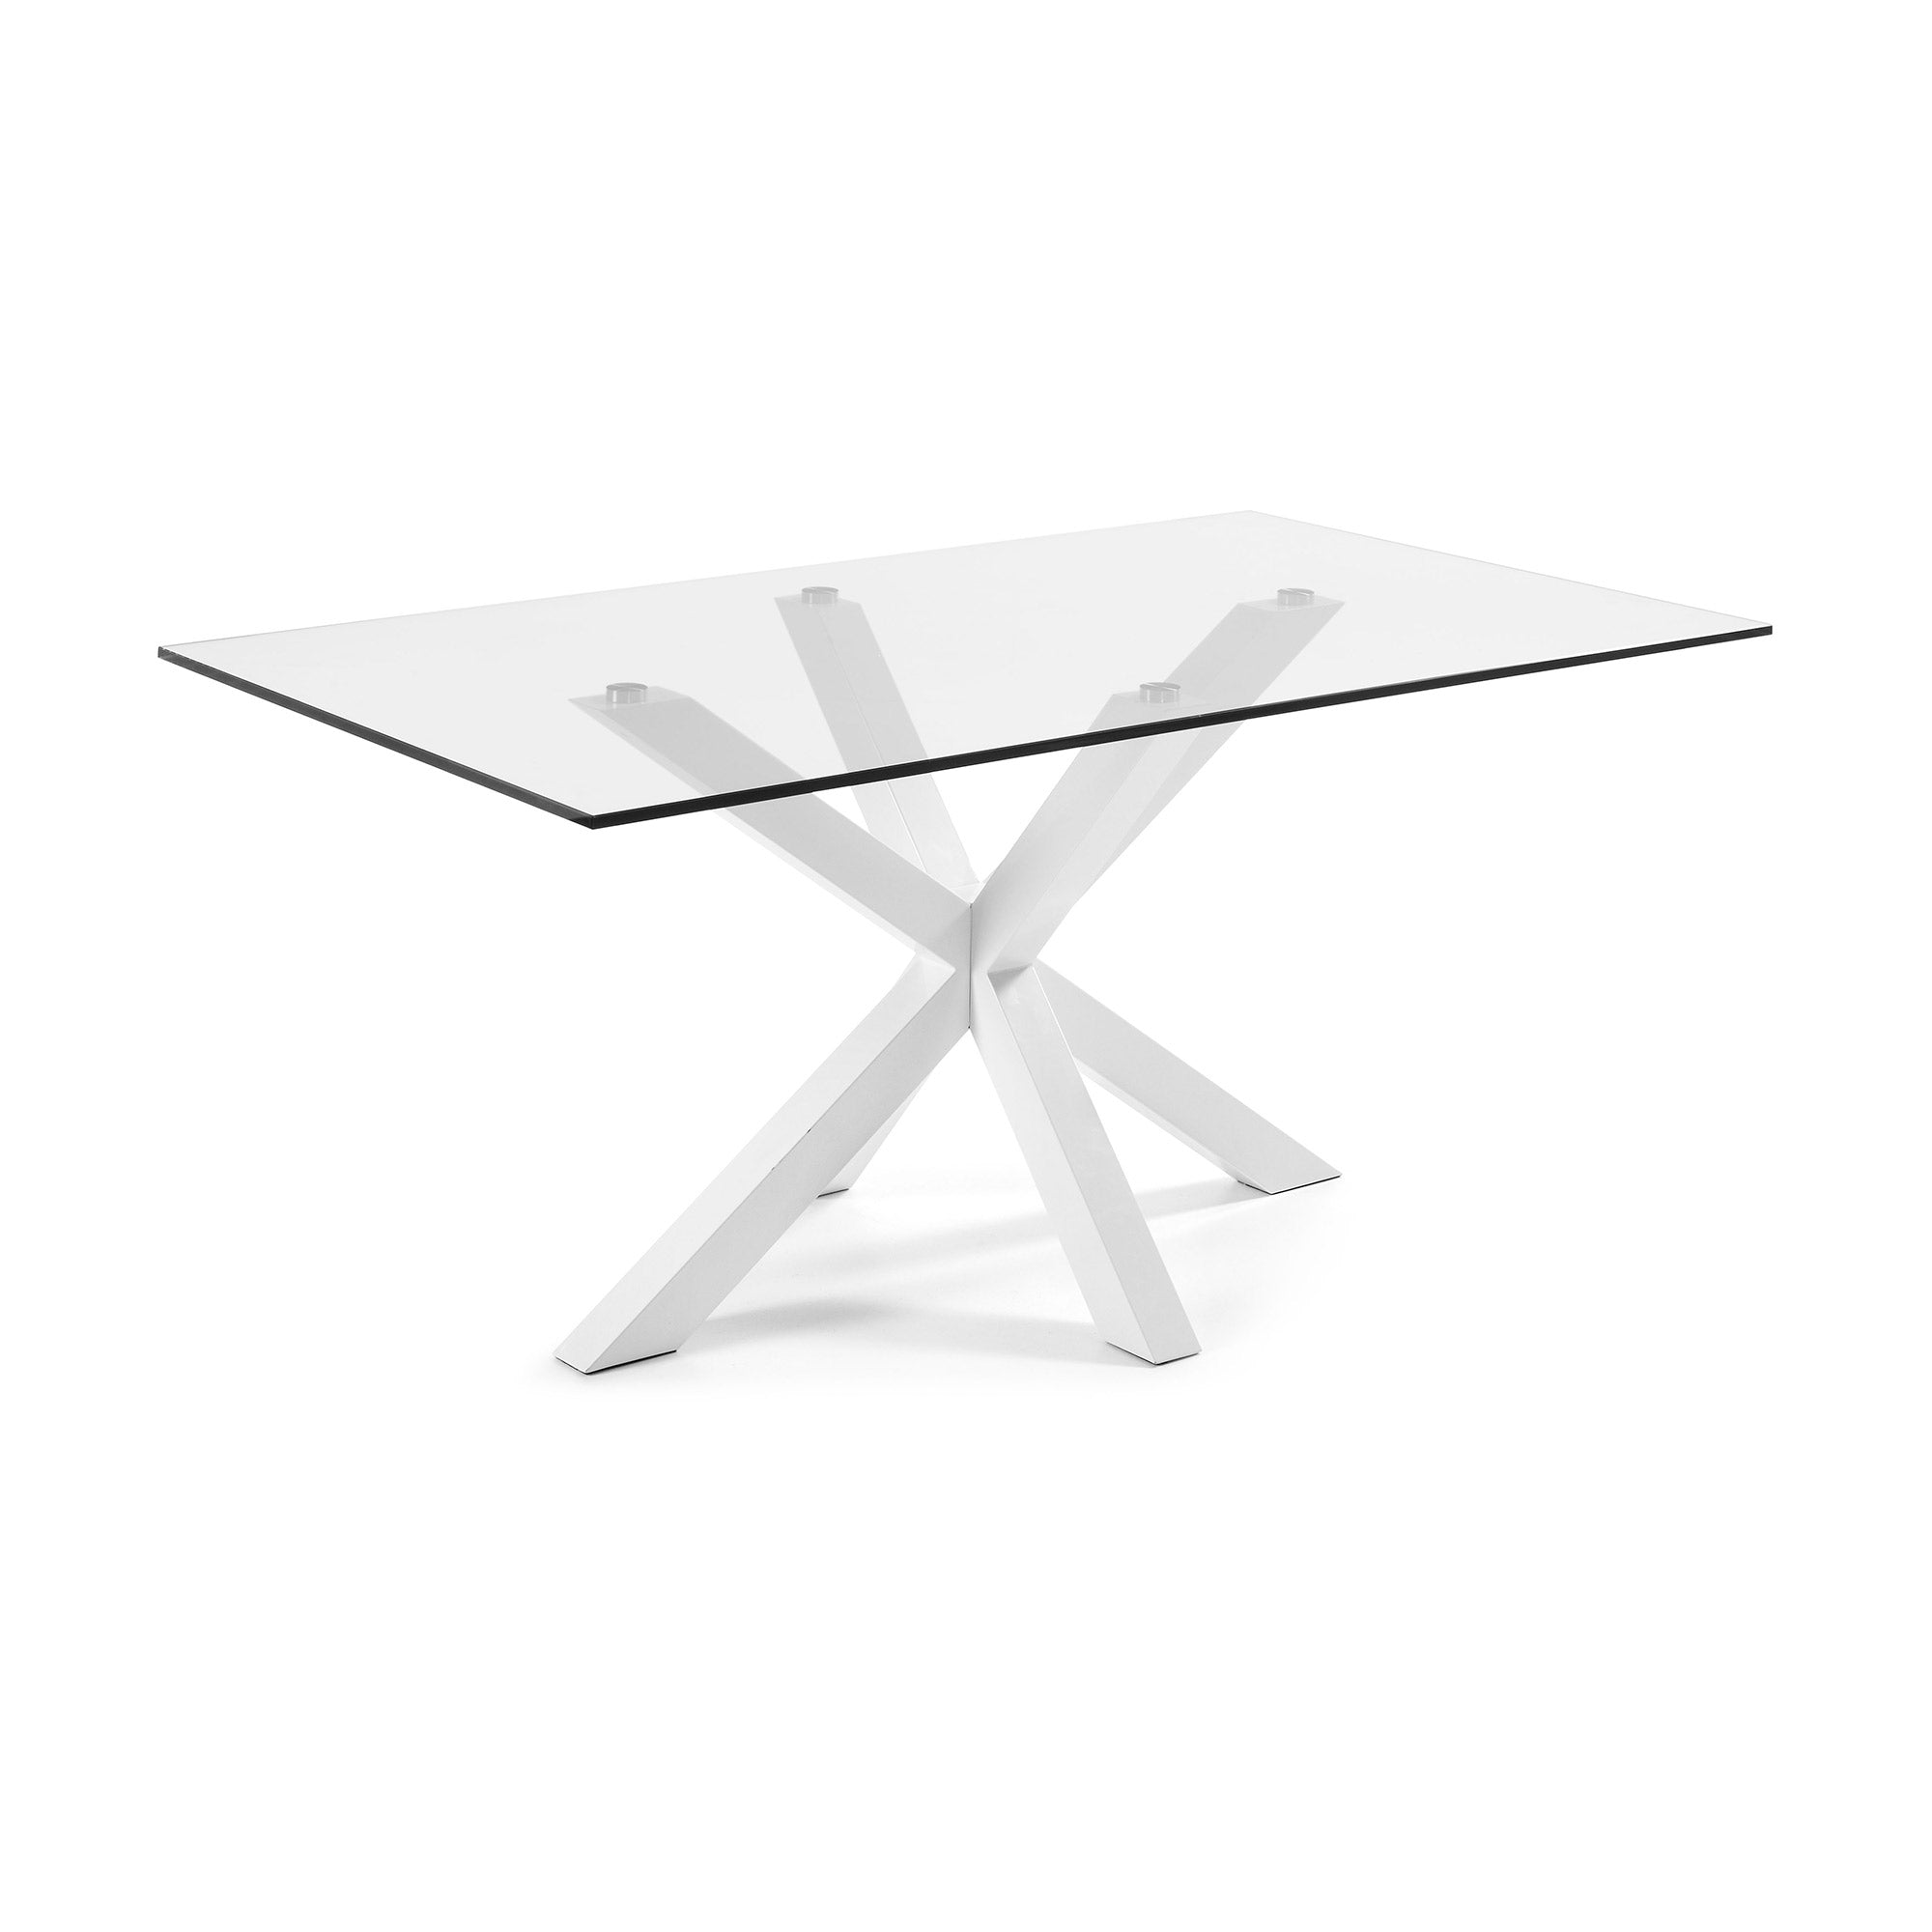 Argo üvegasztal acéllábakkal, fehér kivitelben 180 x 100 cm